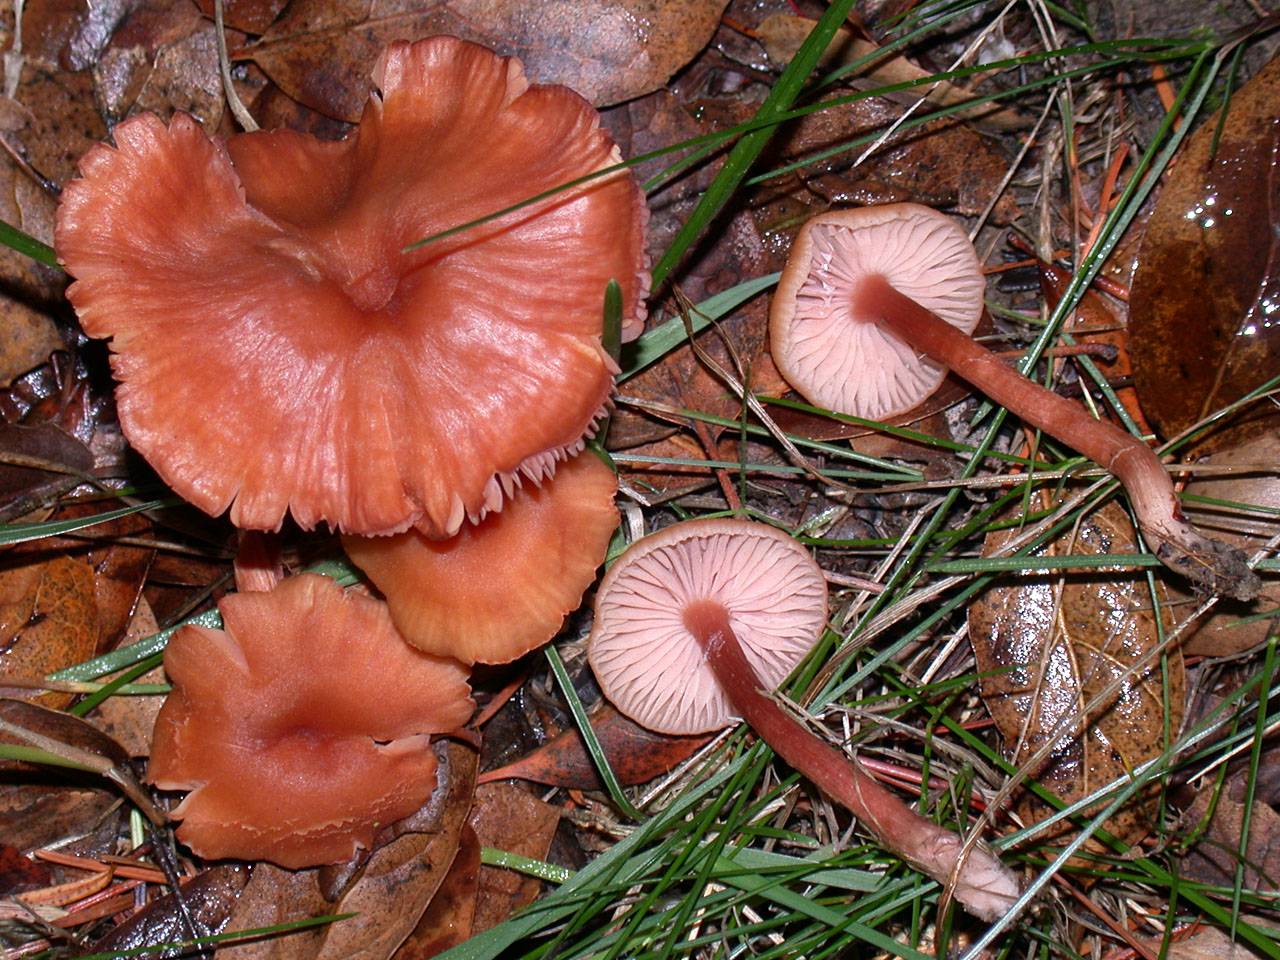 Польза рыжиков, их вред для организма. полезные и вредные свойства грибов рыжиков